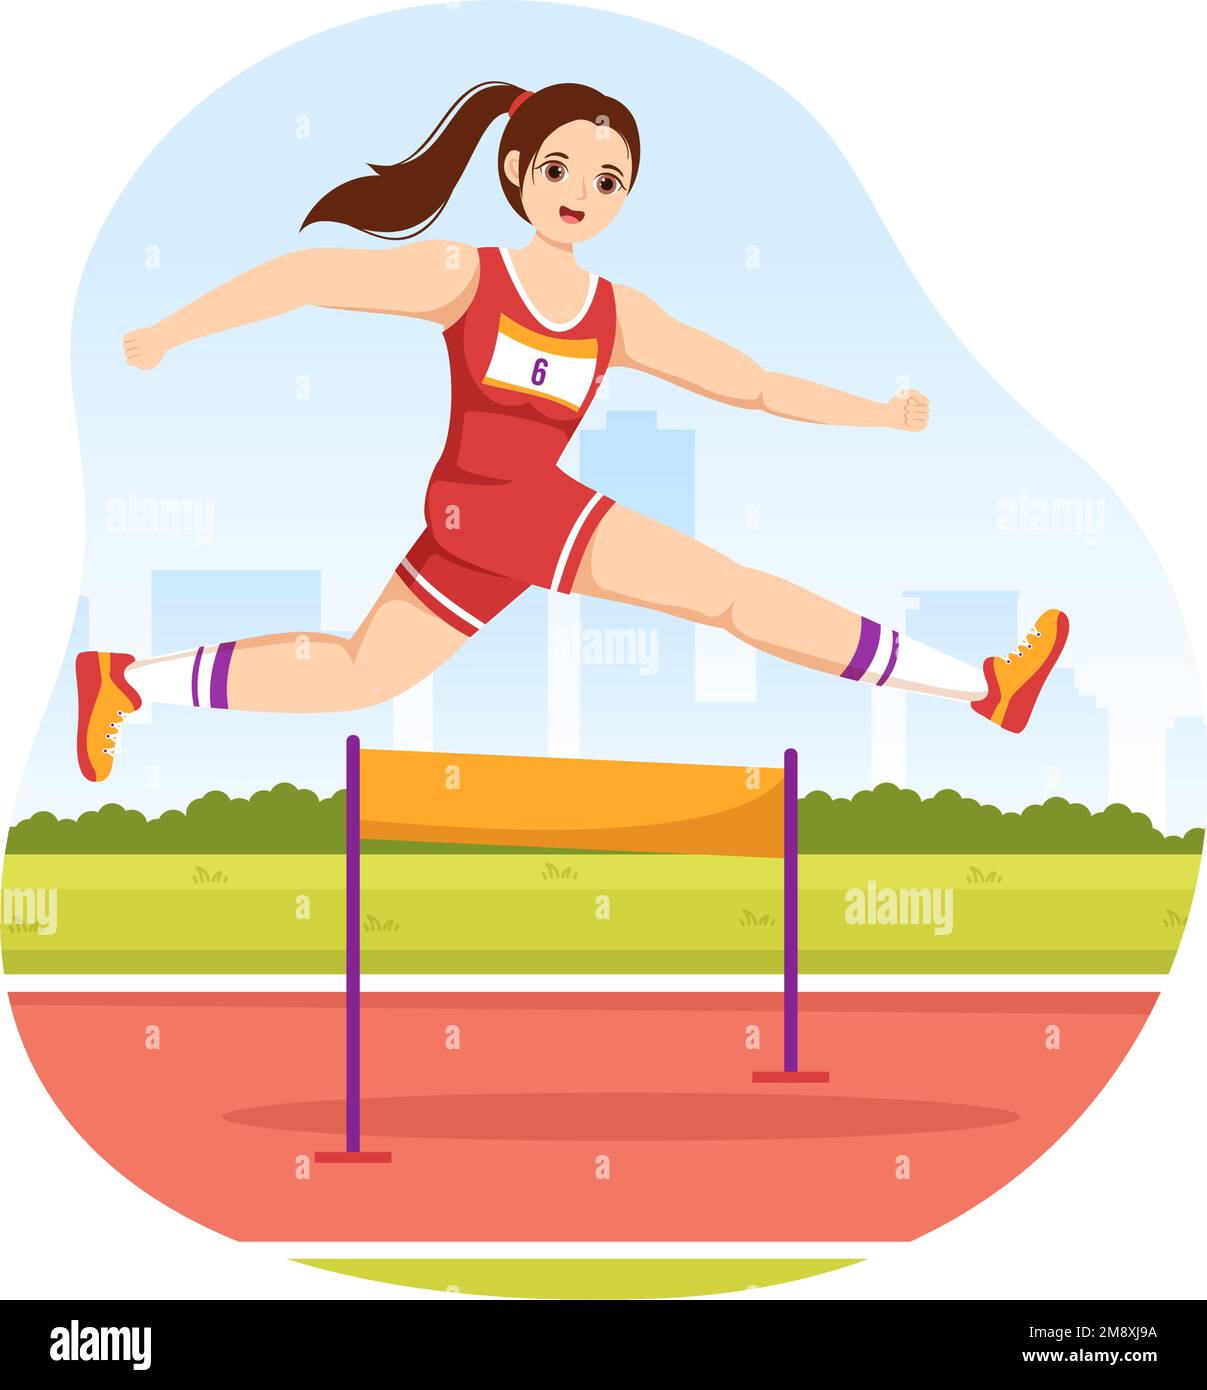 Athlète course obstacle long saut sportif jeu Illustration dans obstacle course pour Web Banner ou page d'arrivée dans Flat Cartoon modèles dessinés à la main Illustration de Vecteur